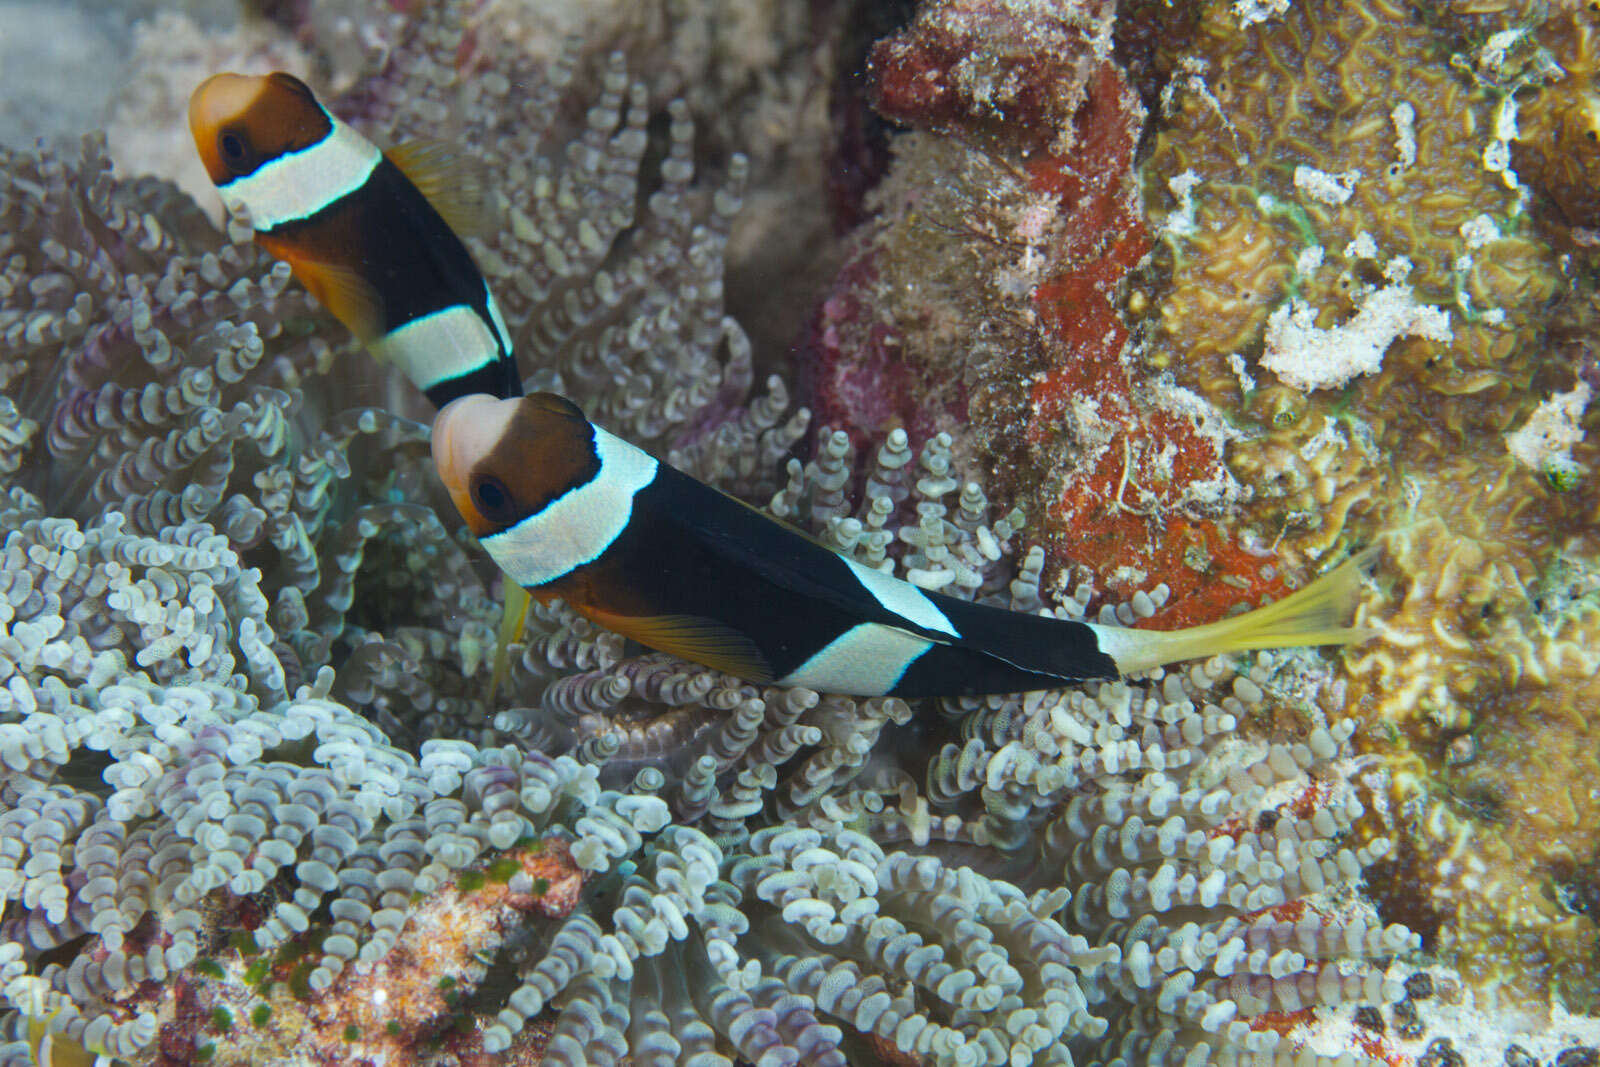 Image of Clark's anemonefish